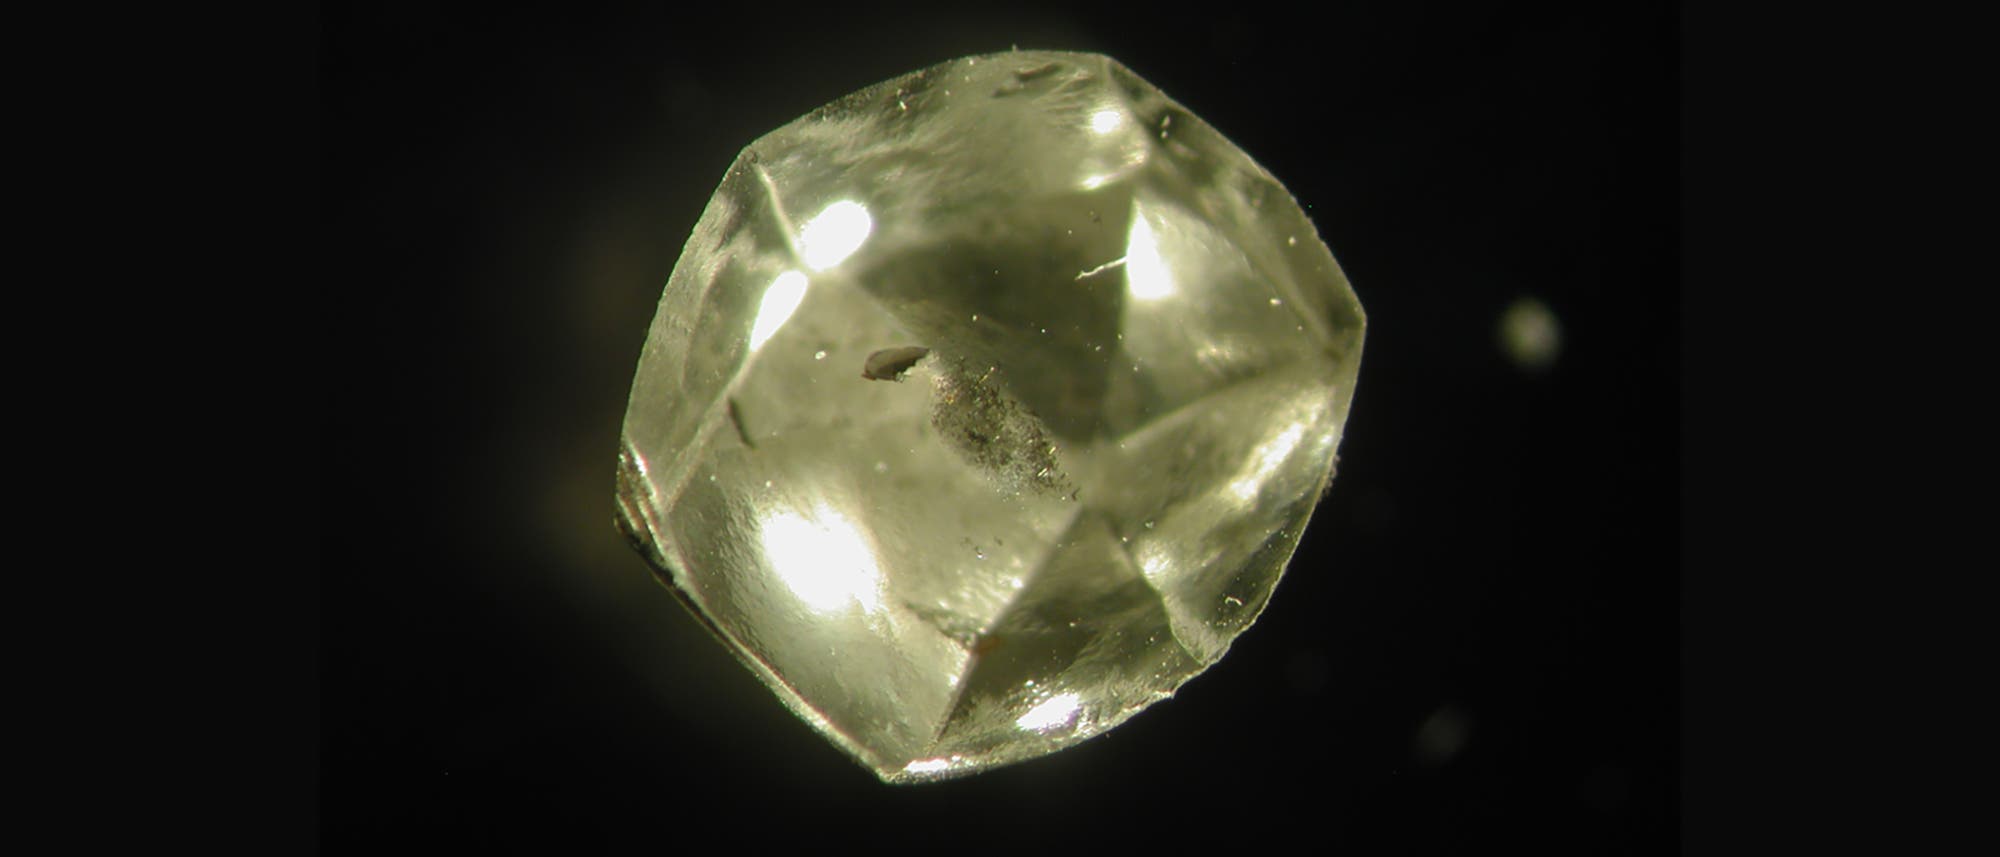 Südafrikanischer Diamant mit Flüssigkeit im Inneren.